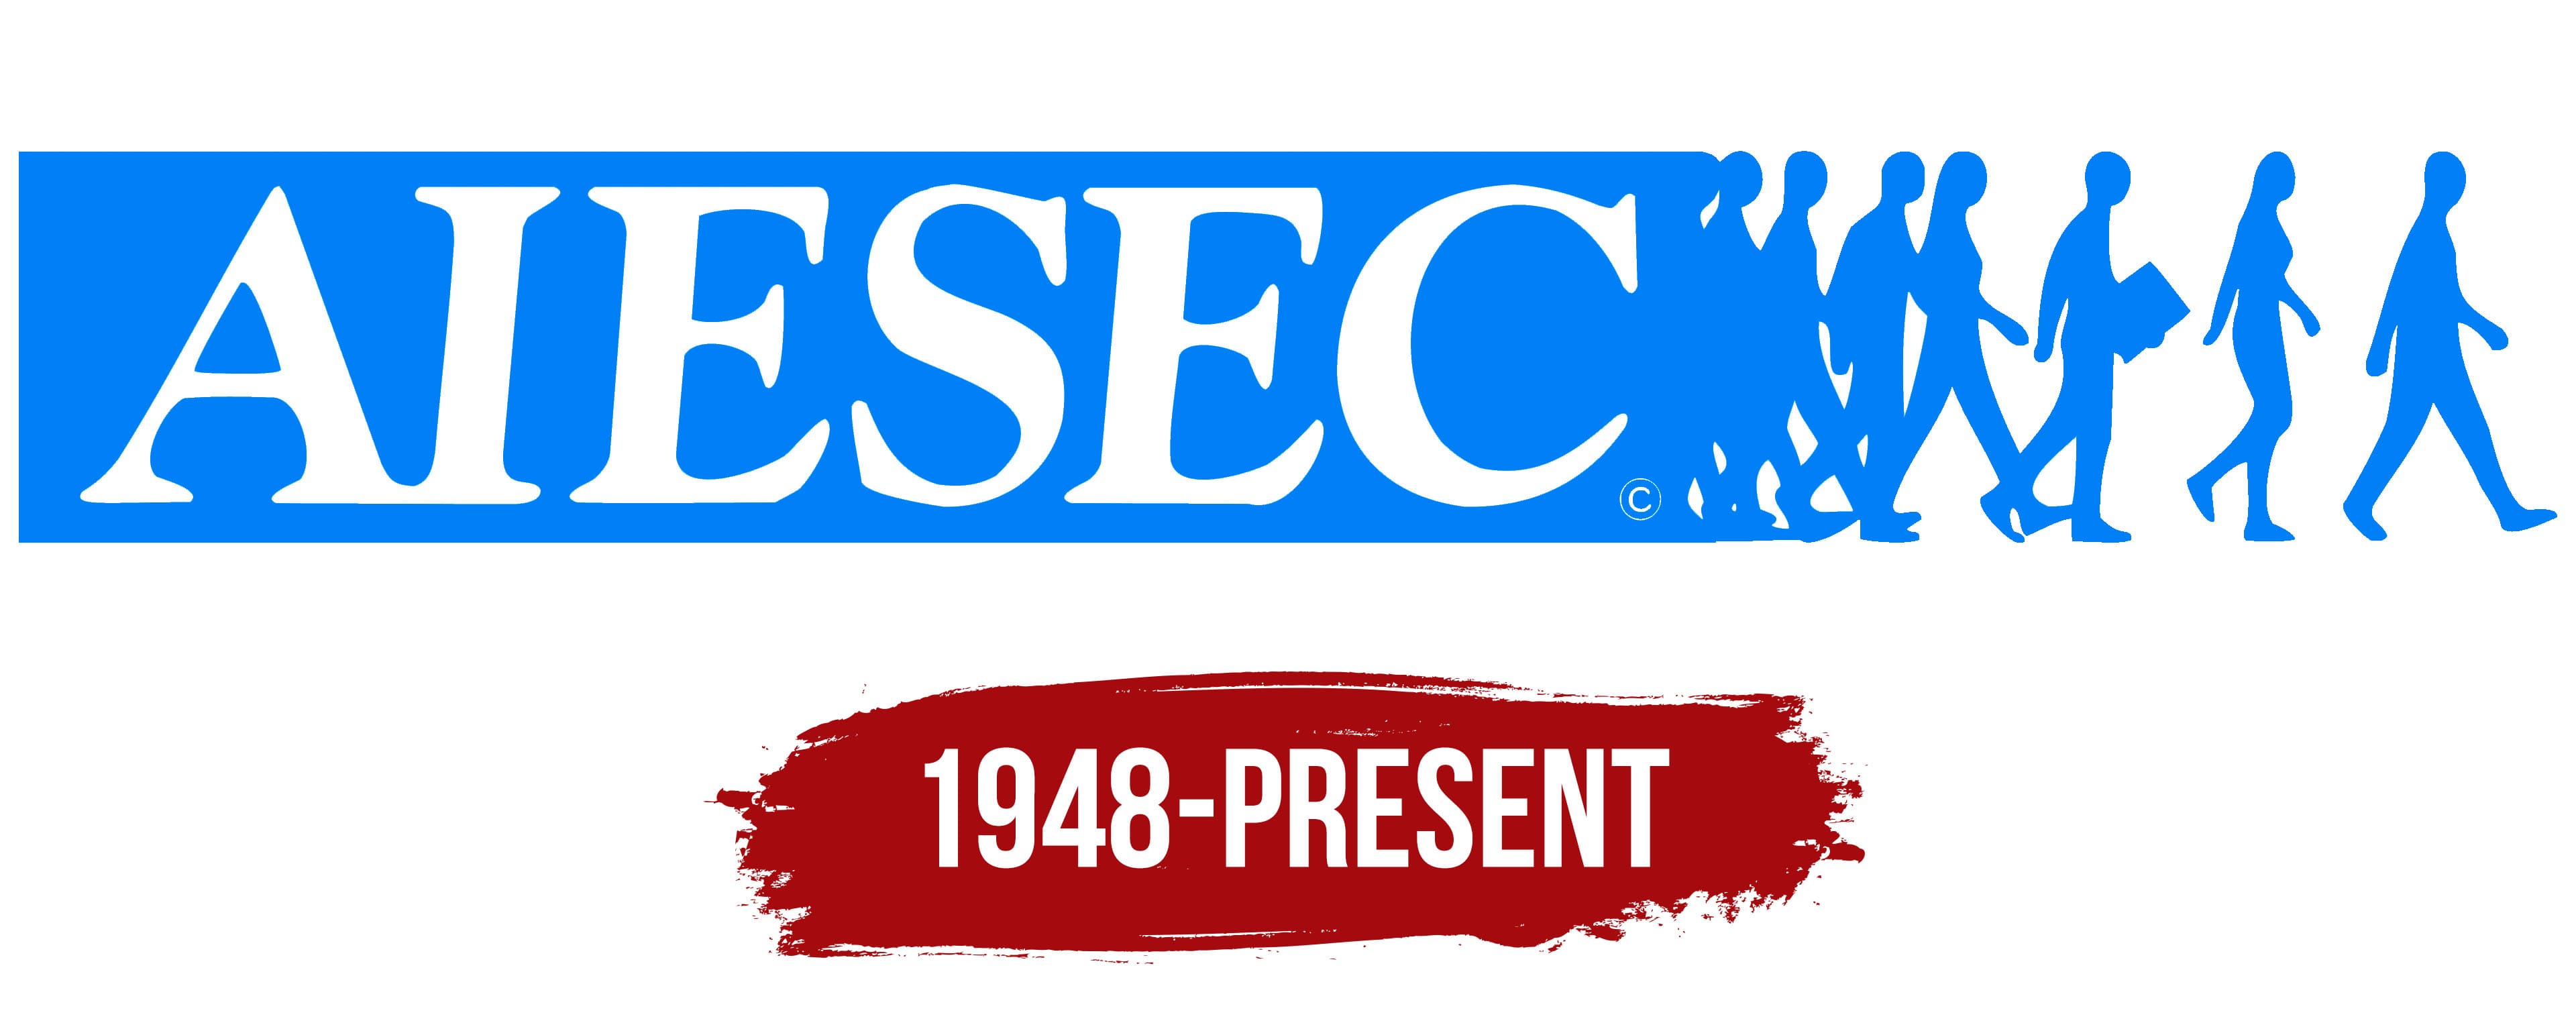 AIESEC Opportunities: Becoming a changemaker | PPT